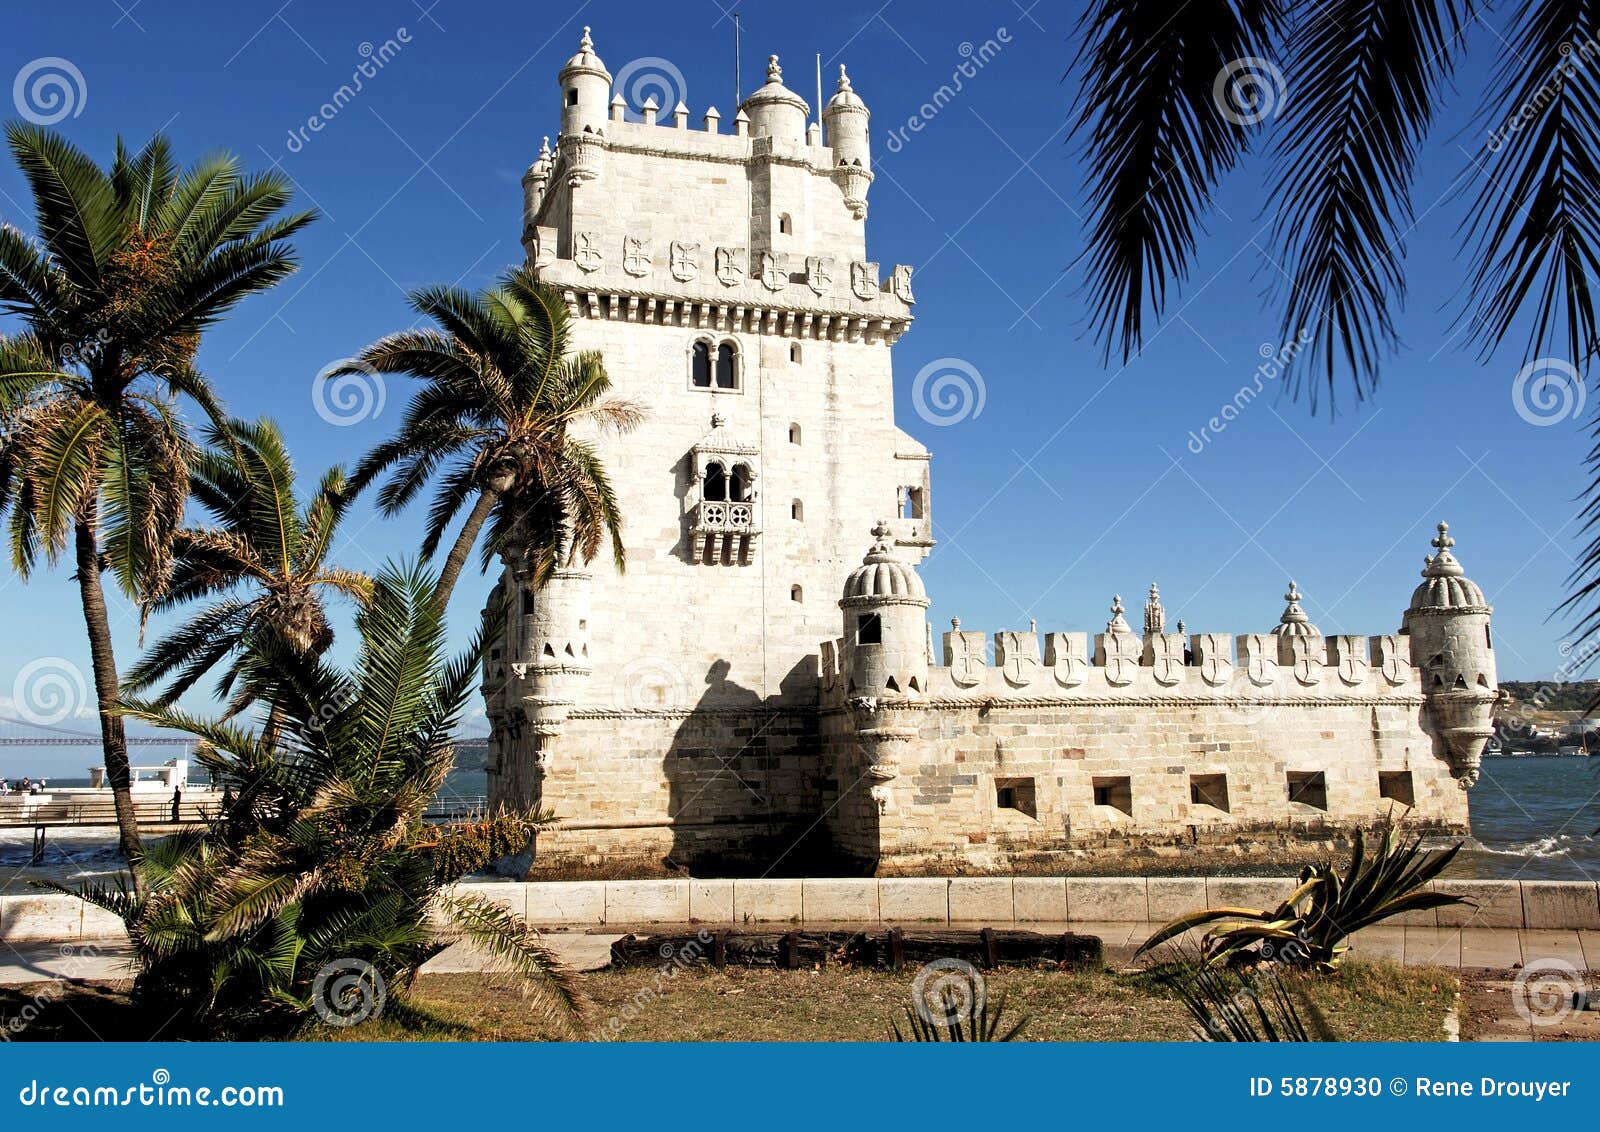 portugal, lisbon: tower of belem